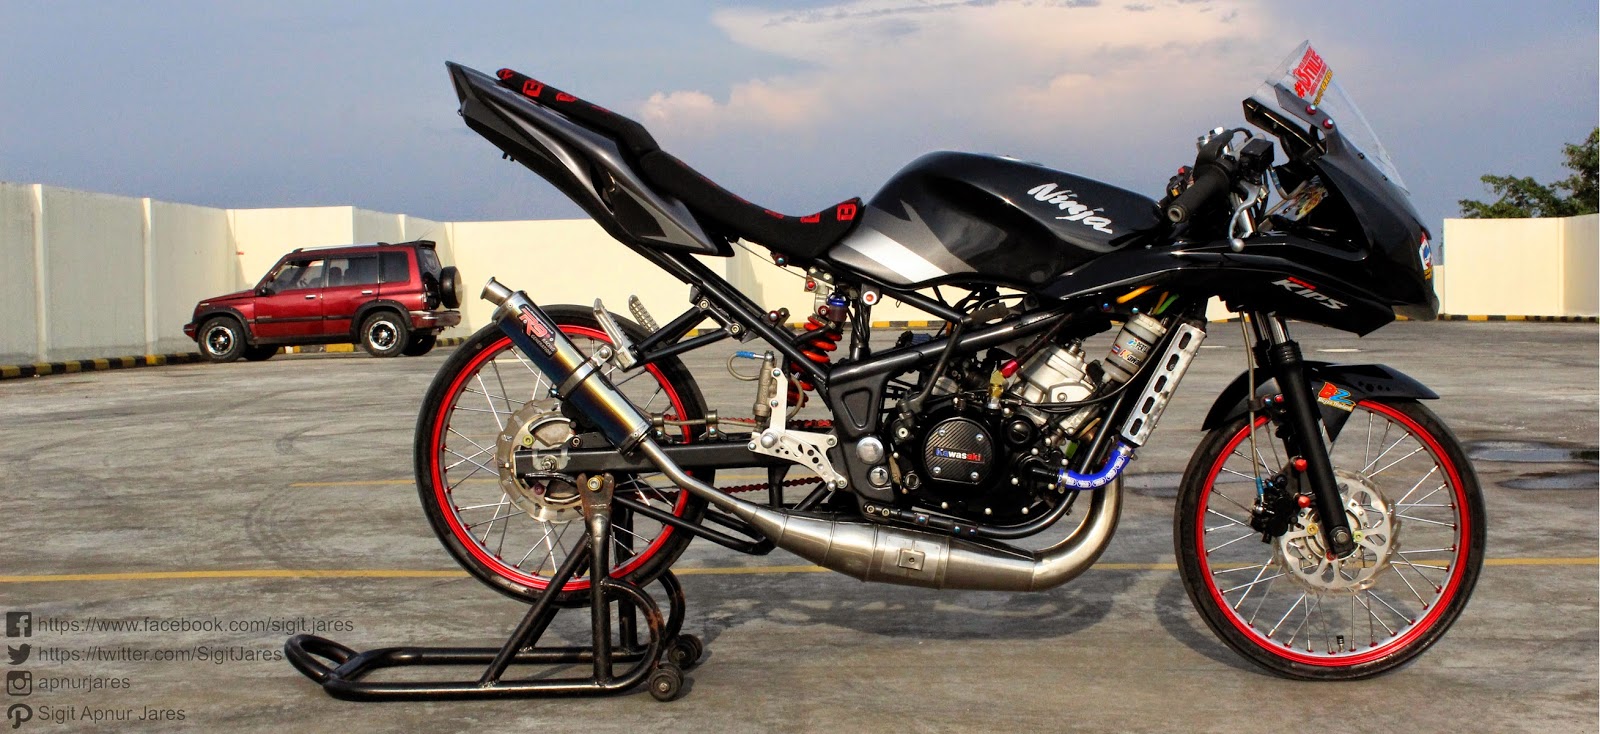 100 Gambar Motor Ninja Rr Thailook Terbaru Dan Terlengkap Obeng Motor